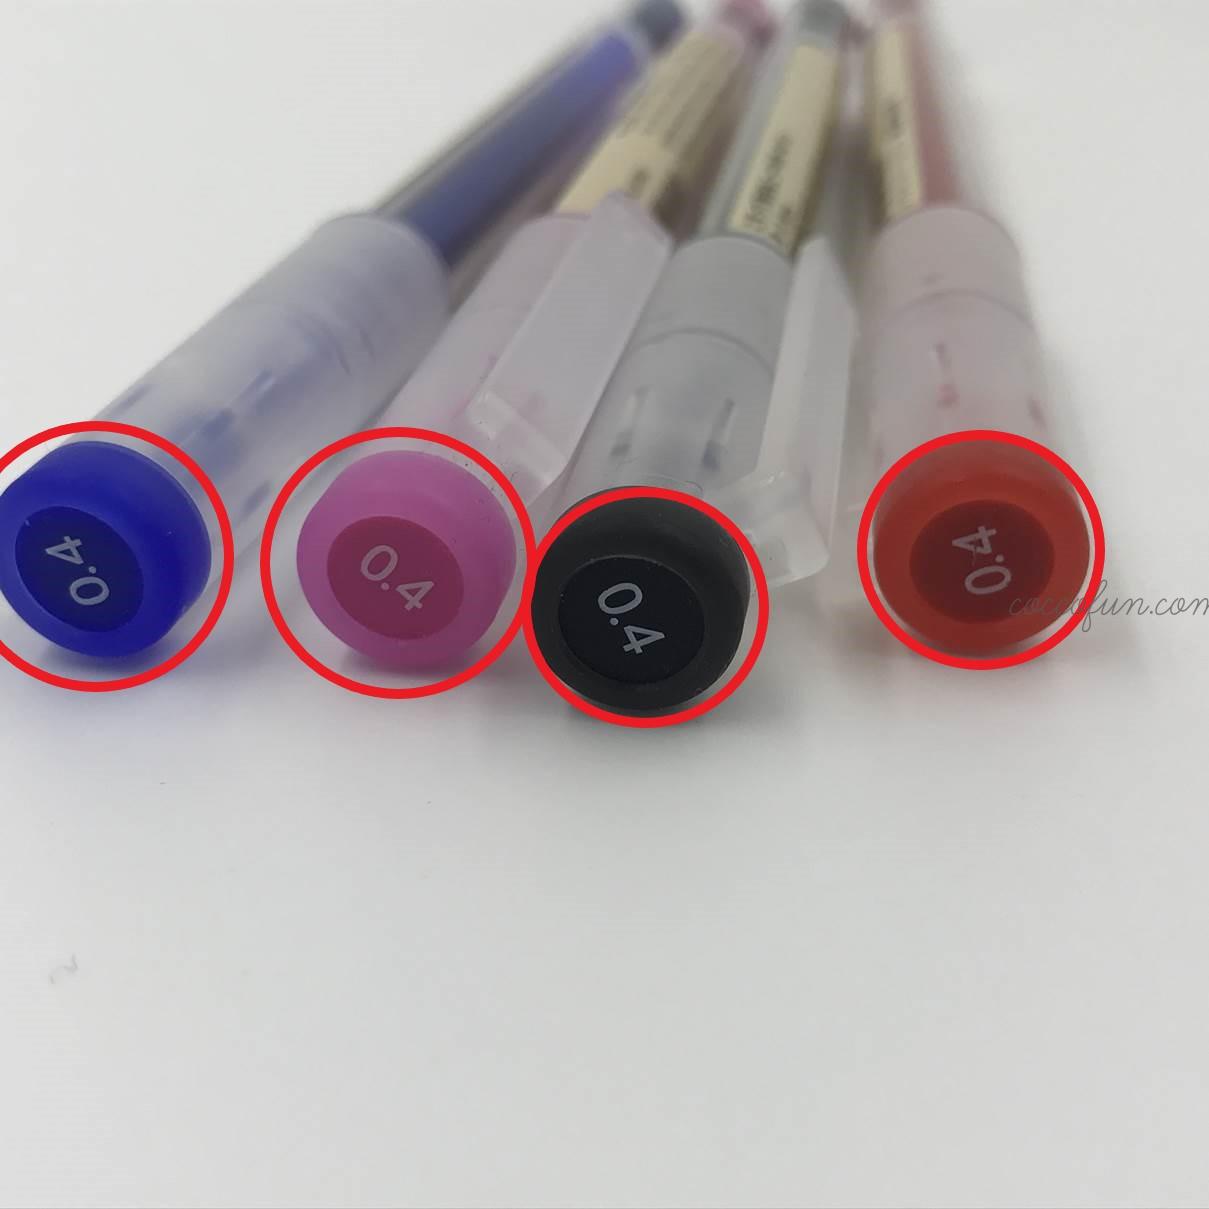 無印良品の こすって消せるニードルボールペン0 4ｍｍ は本当に消せるのか 実験してみました アラフォーママのガチアンチエイジング研究